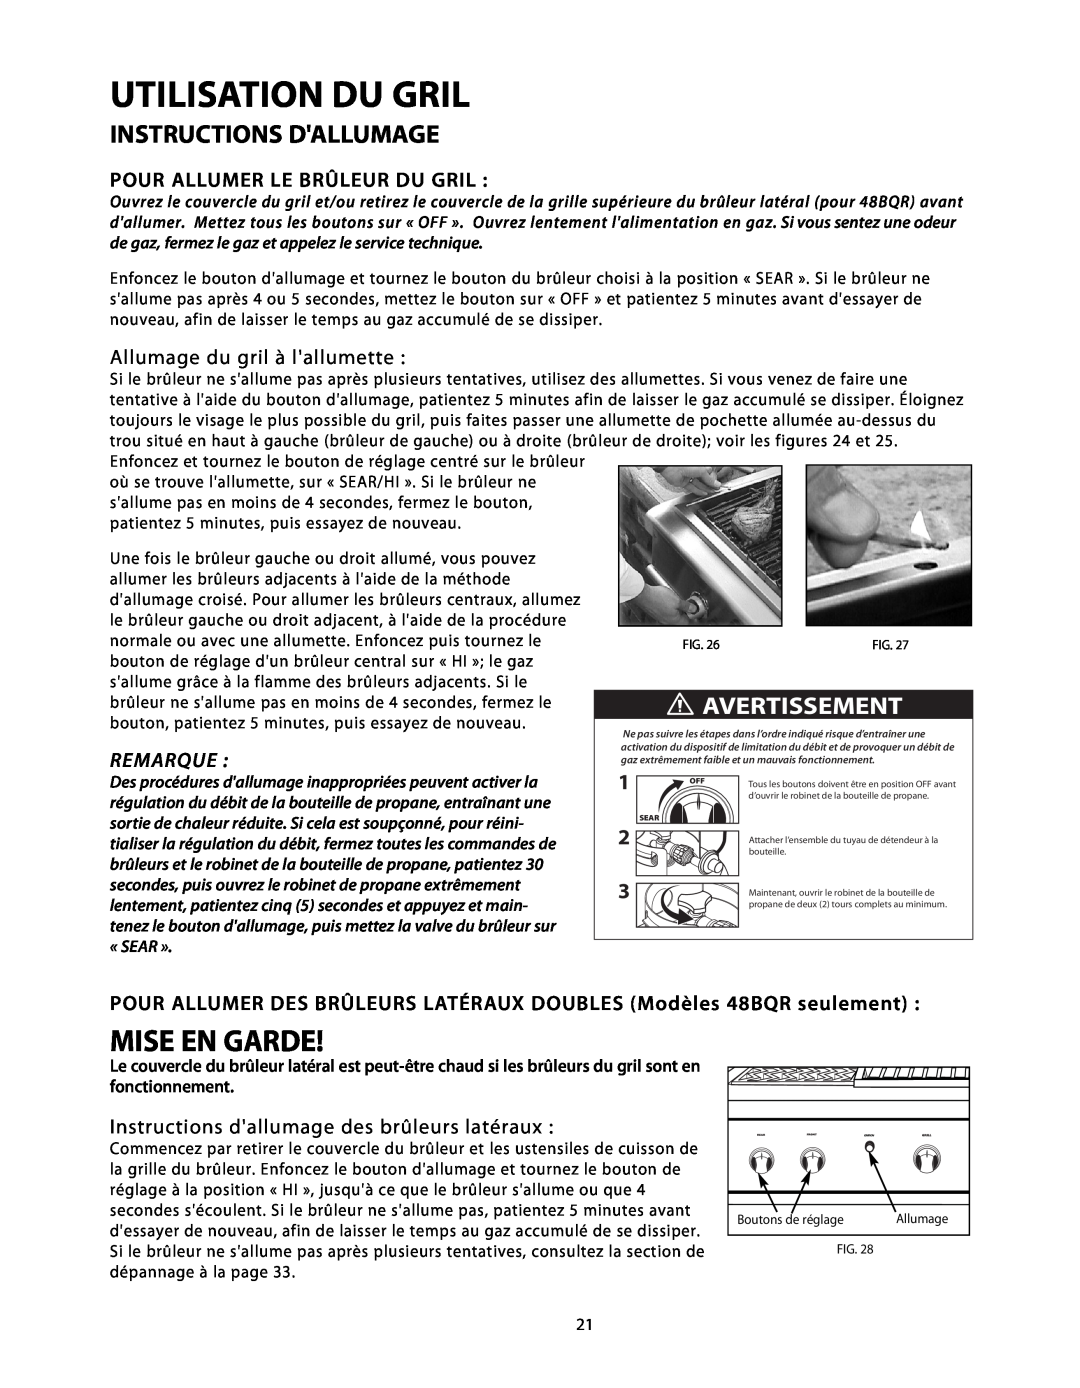 DCS BGB48-BQR Utilisation Du Gril, Instructions Dallumage, Pour Allumer Le Brûleur Du Gril, Allumage du gril à lallumette 